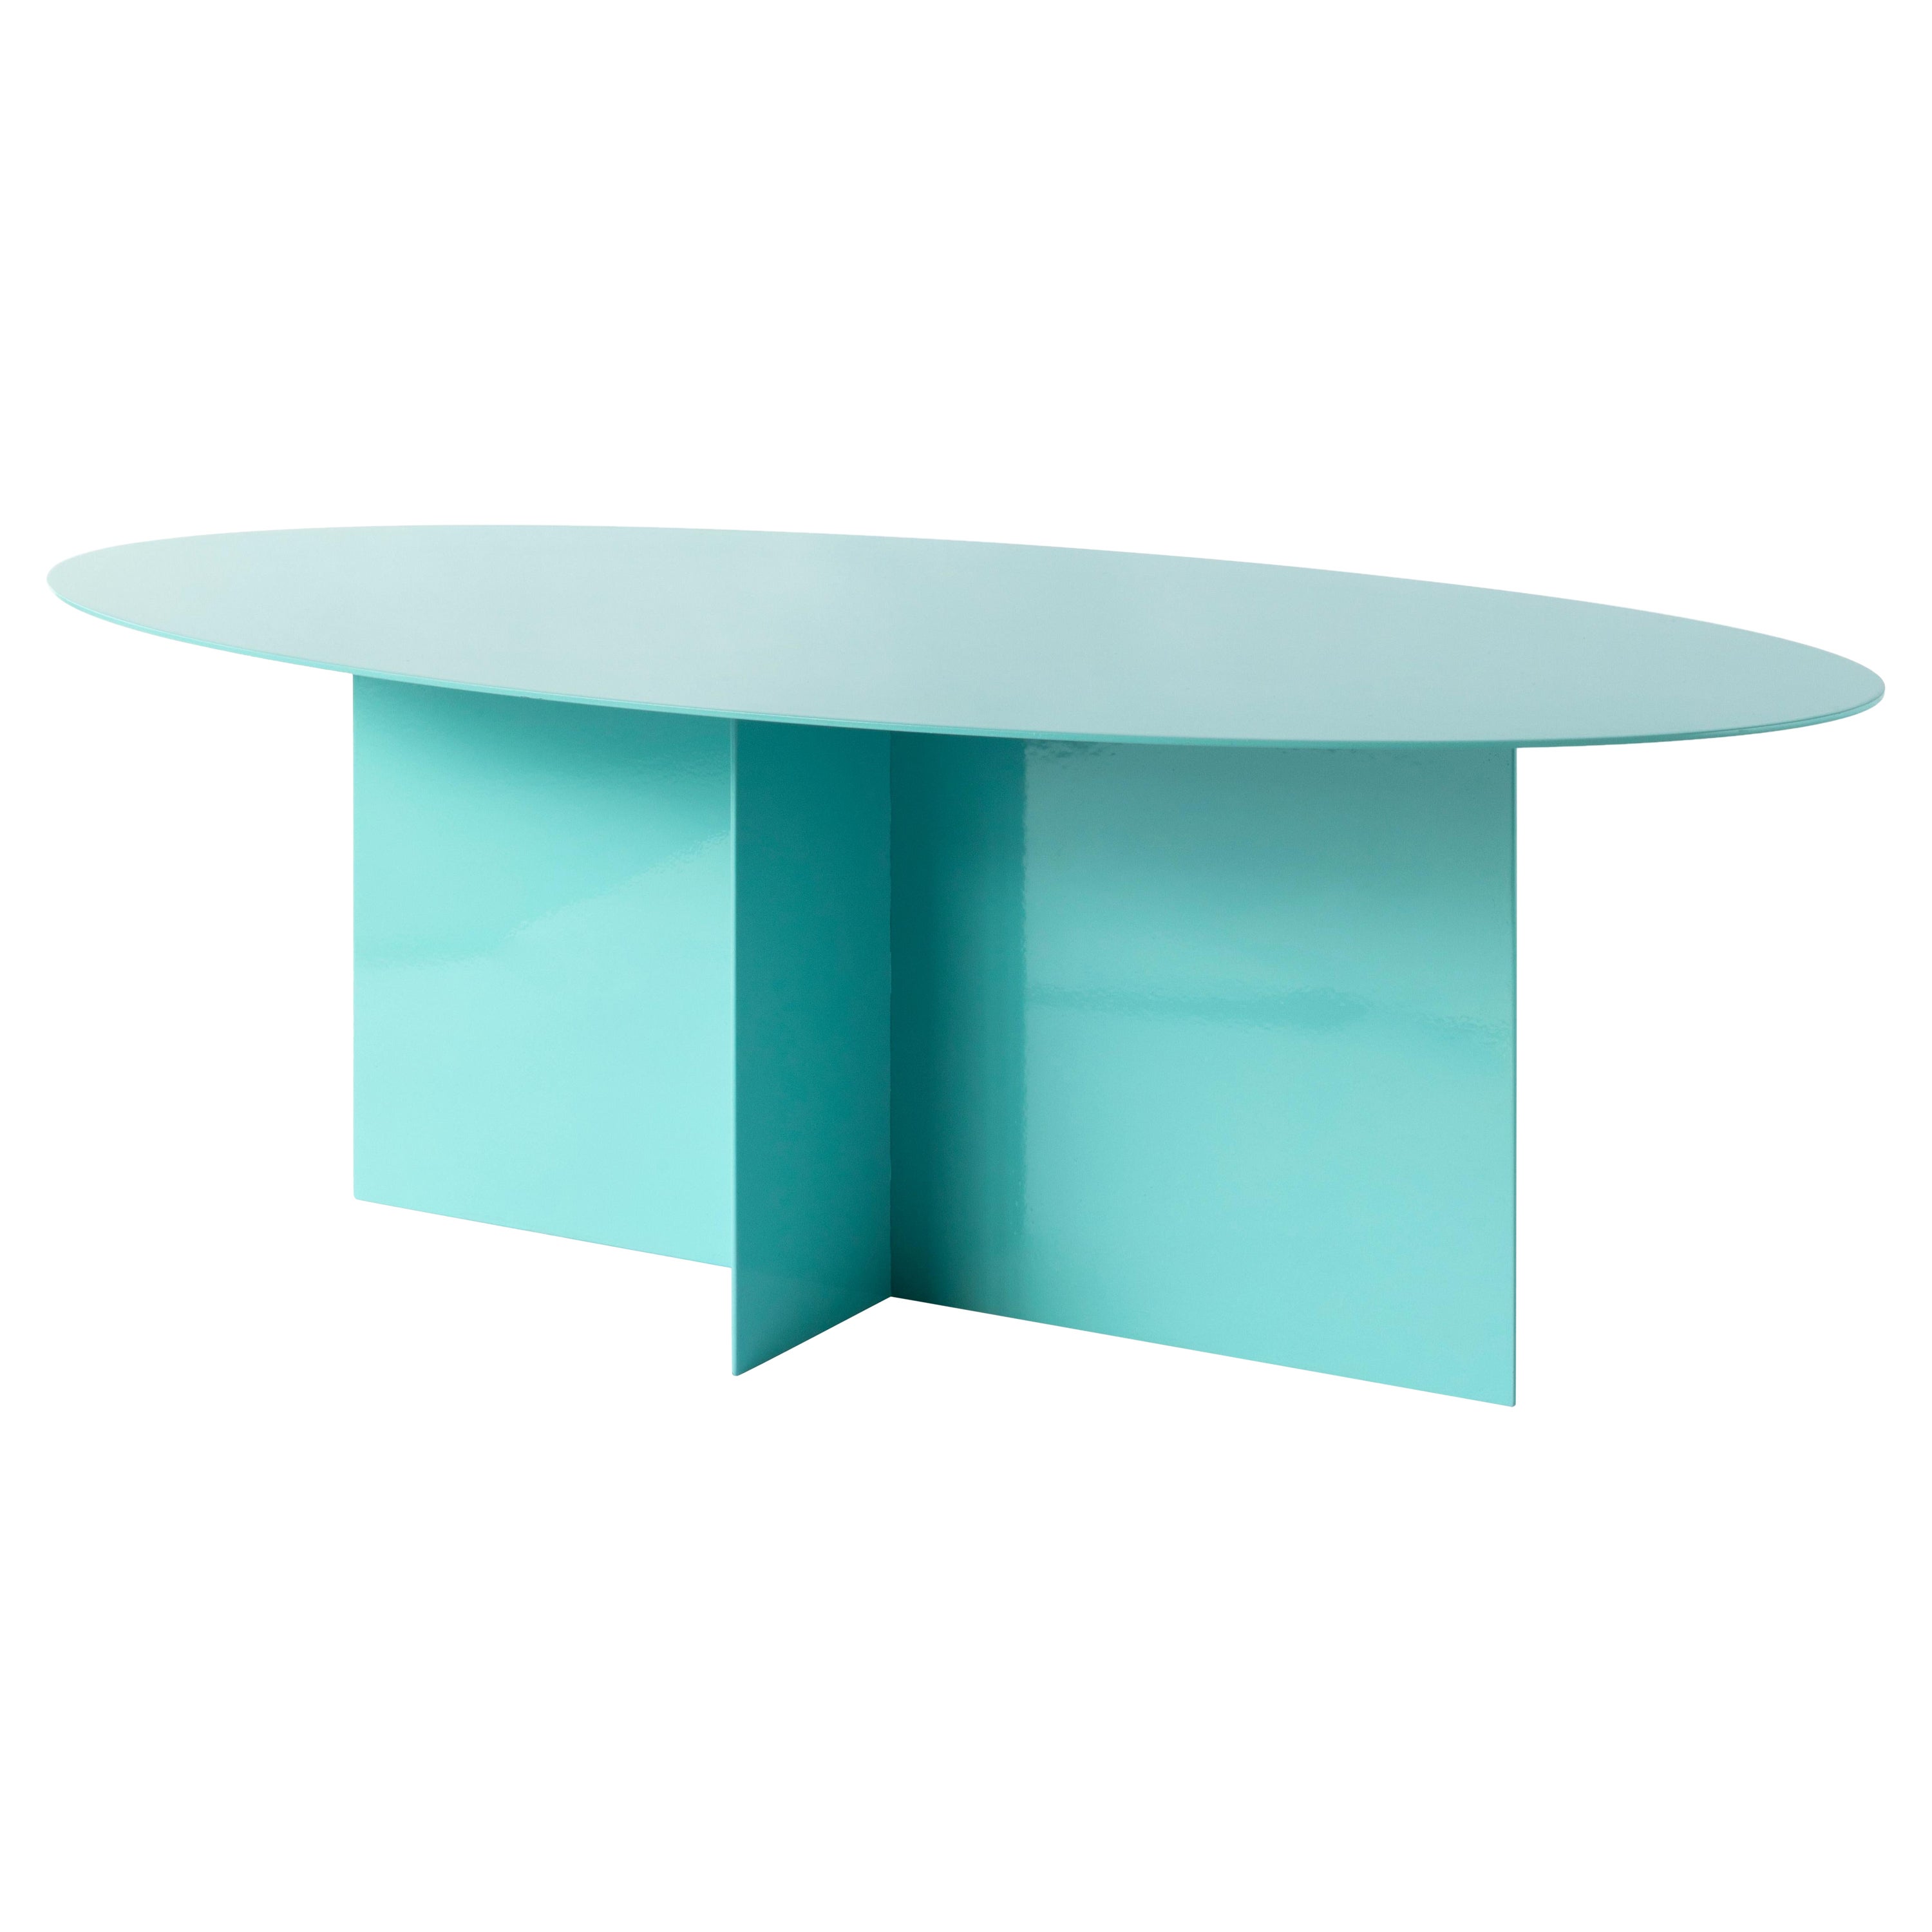 Table basse Across ovale bleu clair par Secondome Edizioni en vente